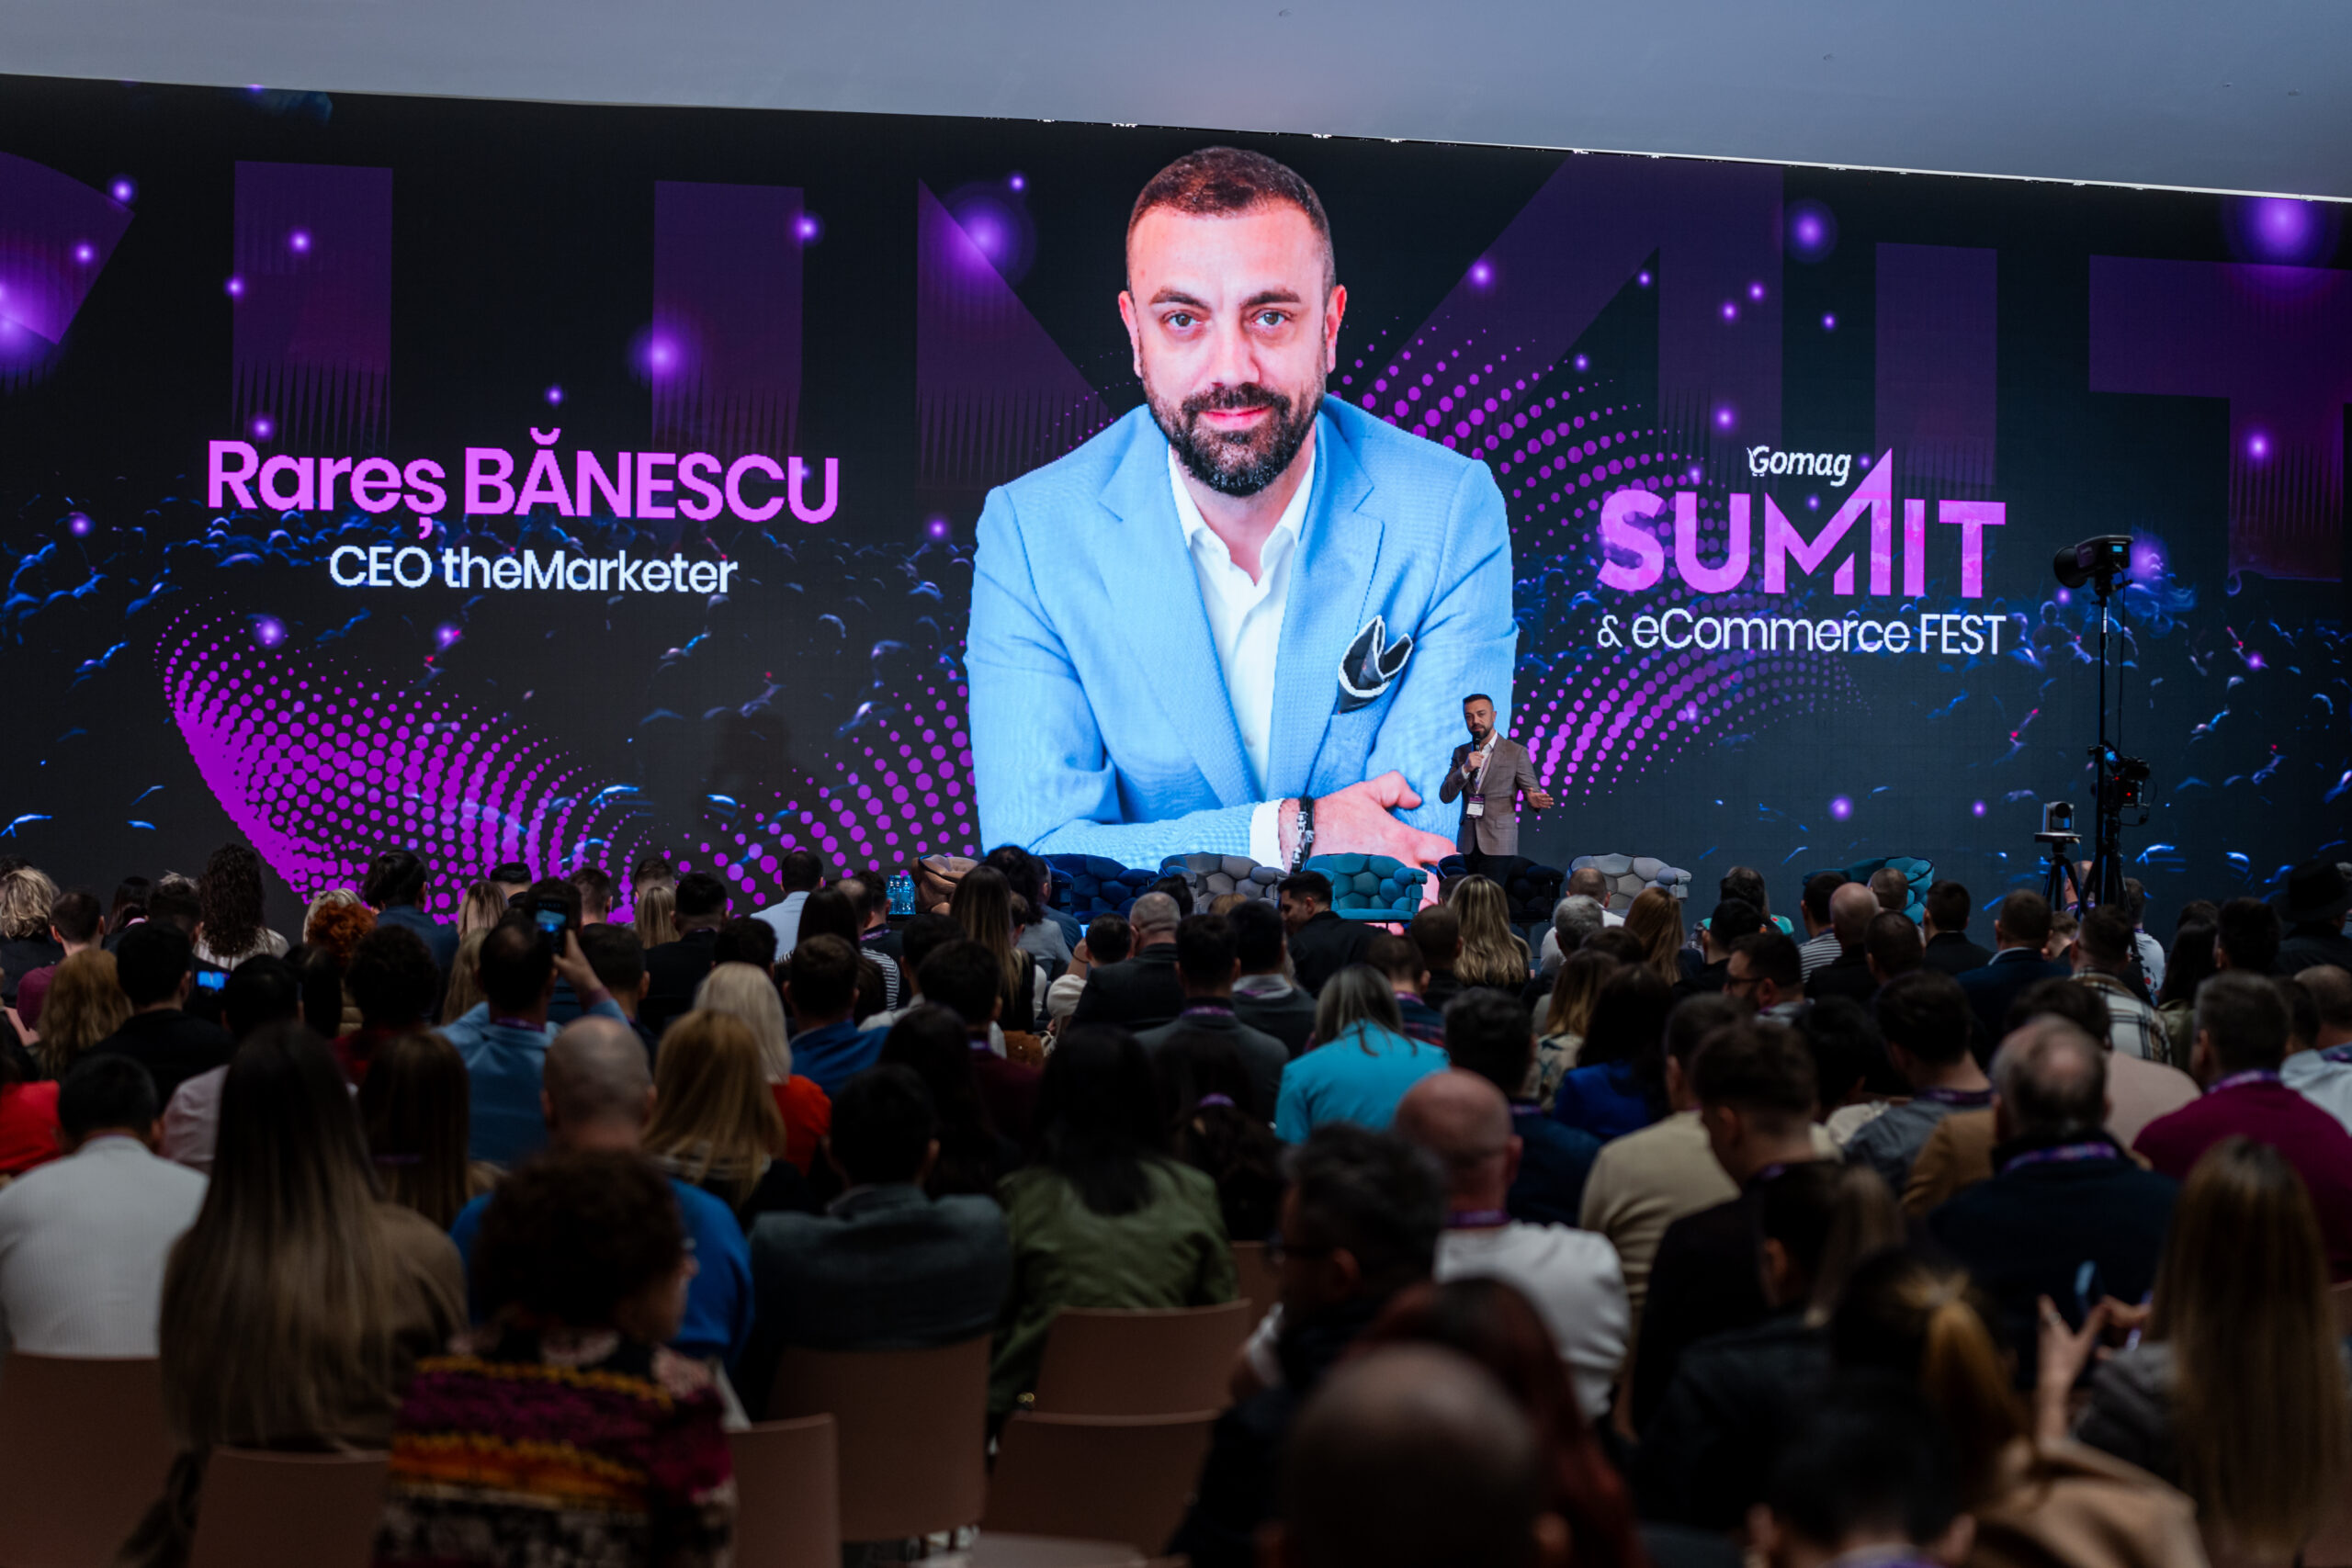 sesiune-Rares-Banescu-gomag-summit